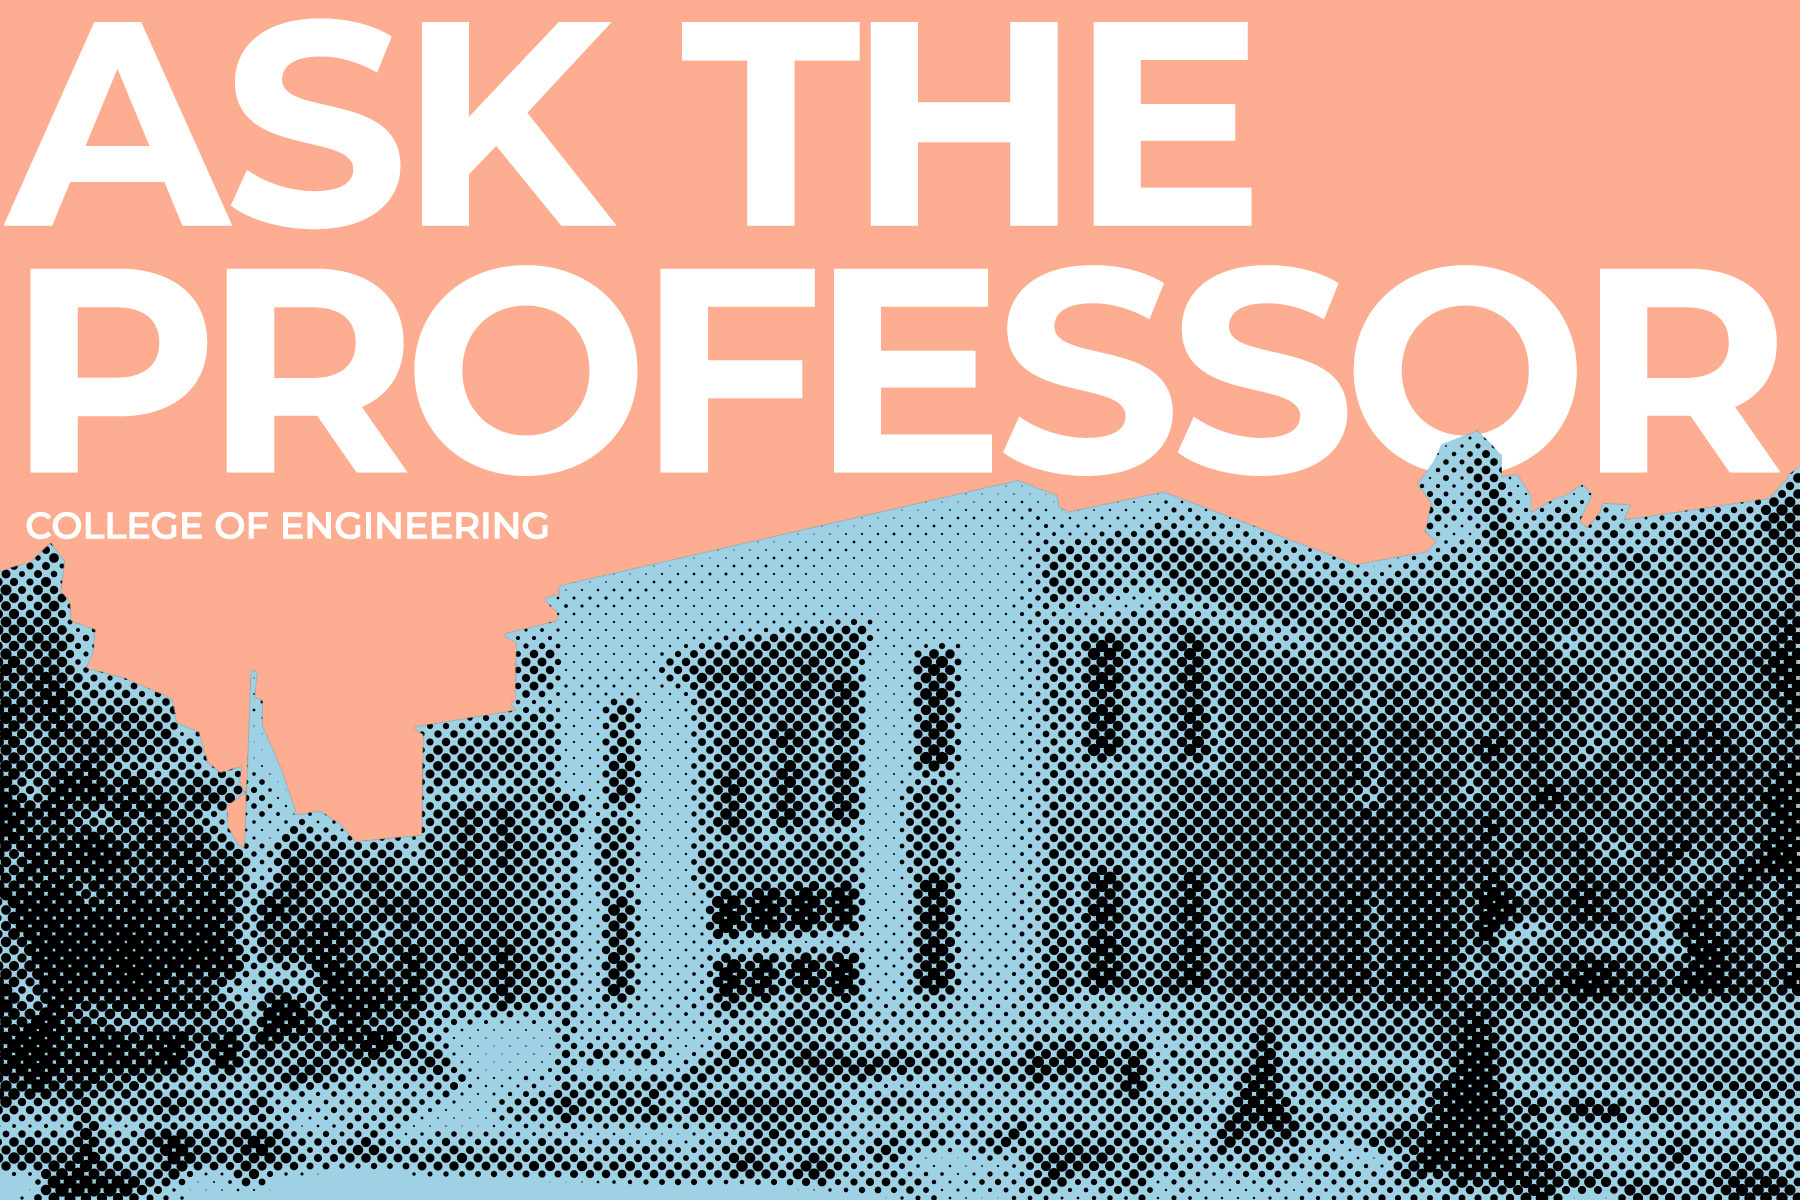 Ask the Professor: Dr. Audrey Meador, assistant professor of mathematics